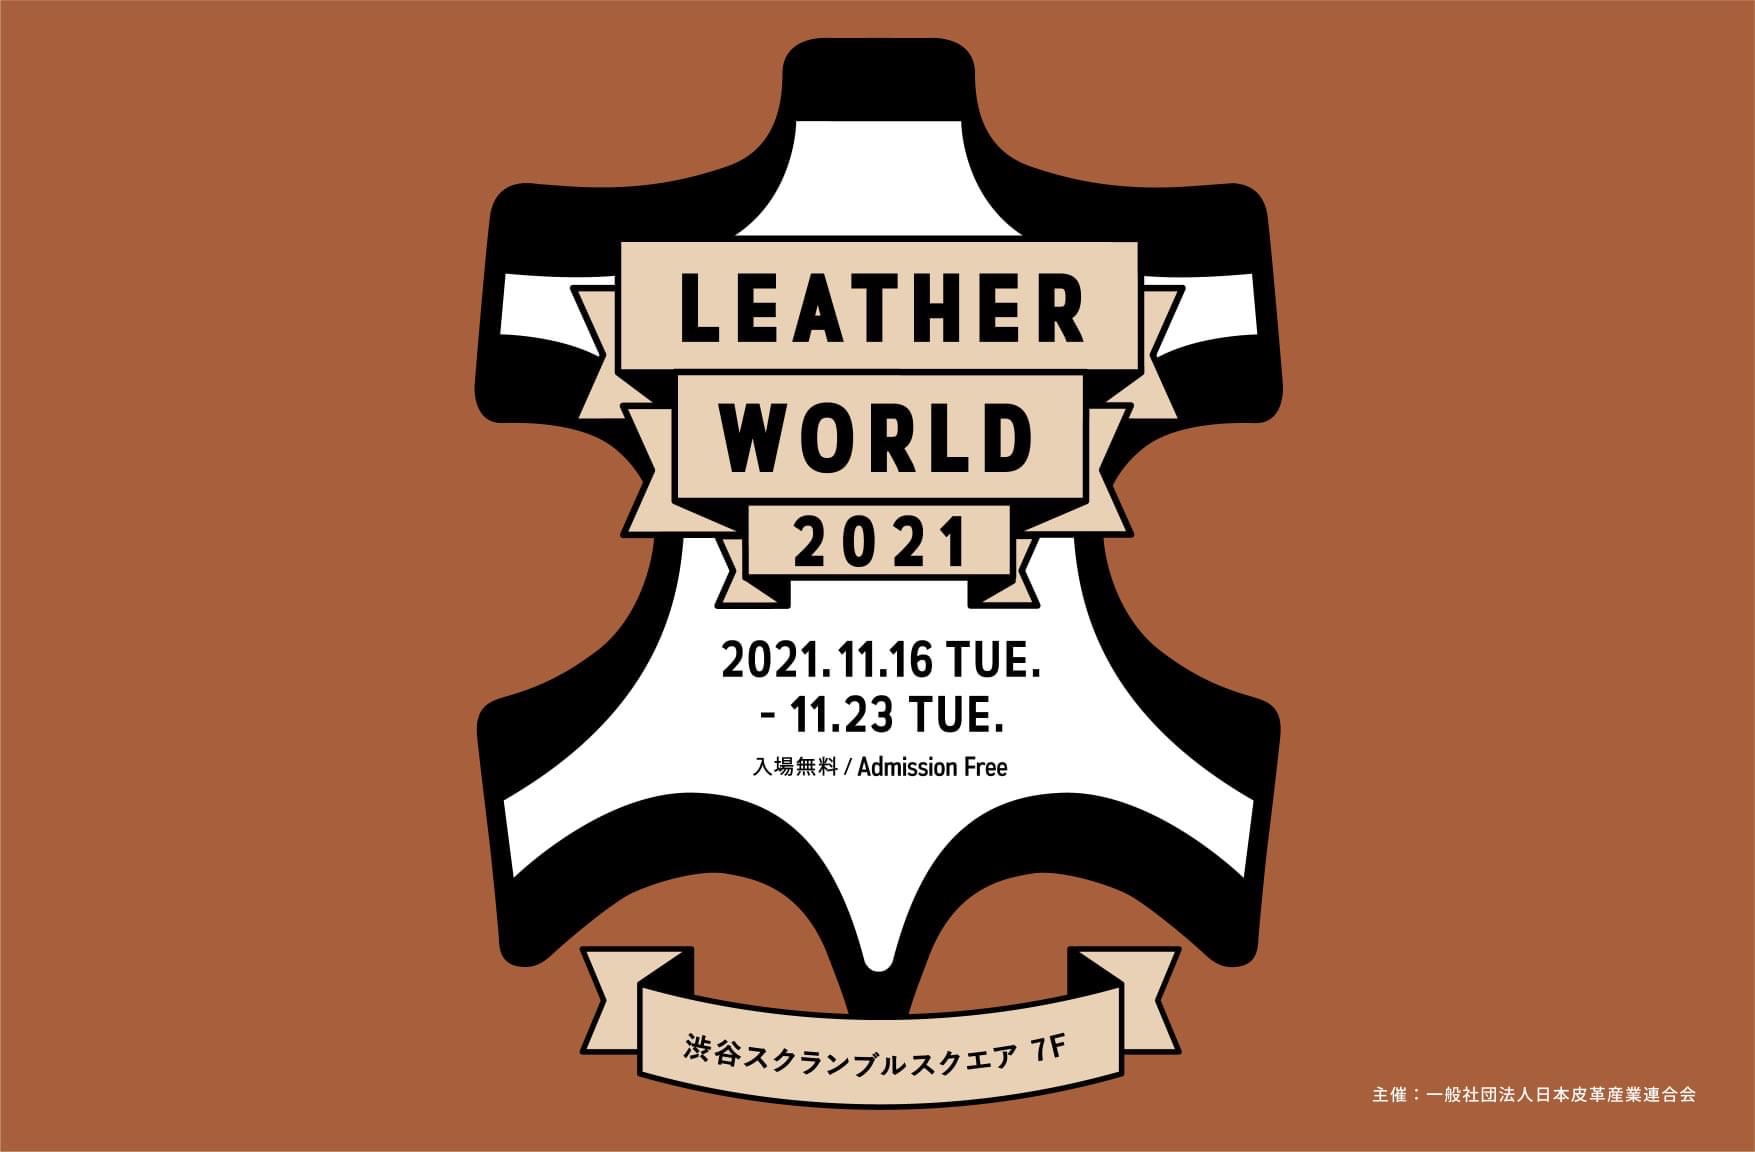 LEATHER WORLD 2021が渋谷スクランブルスクエアで開催されます。（11/16～23）